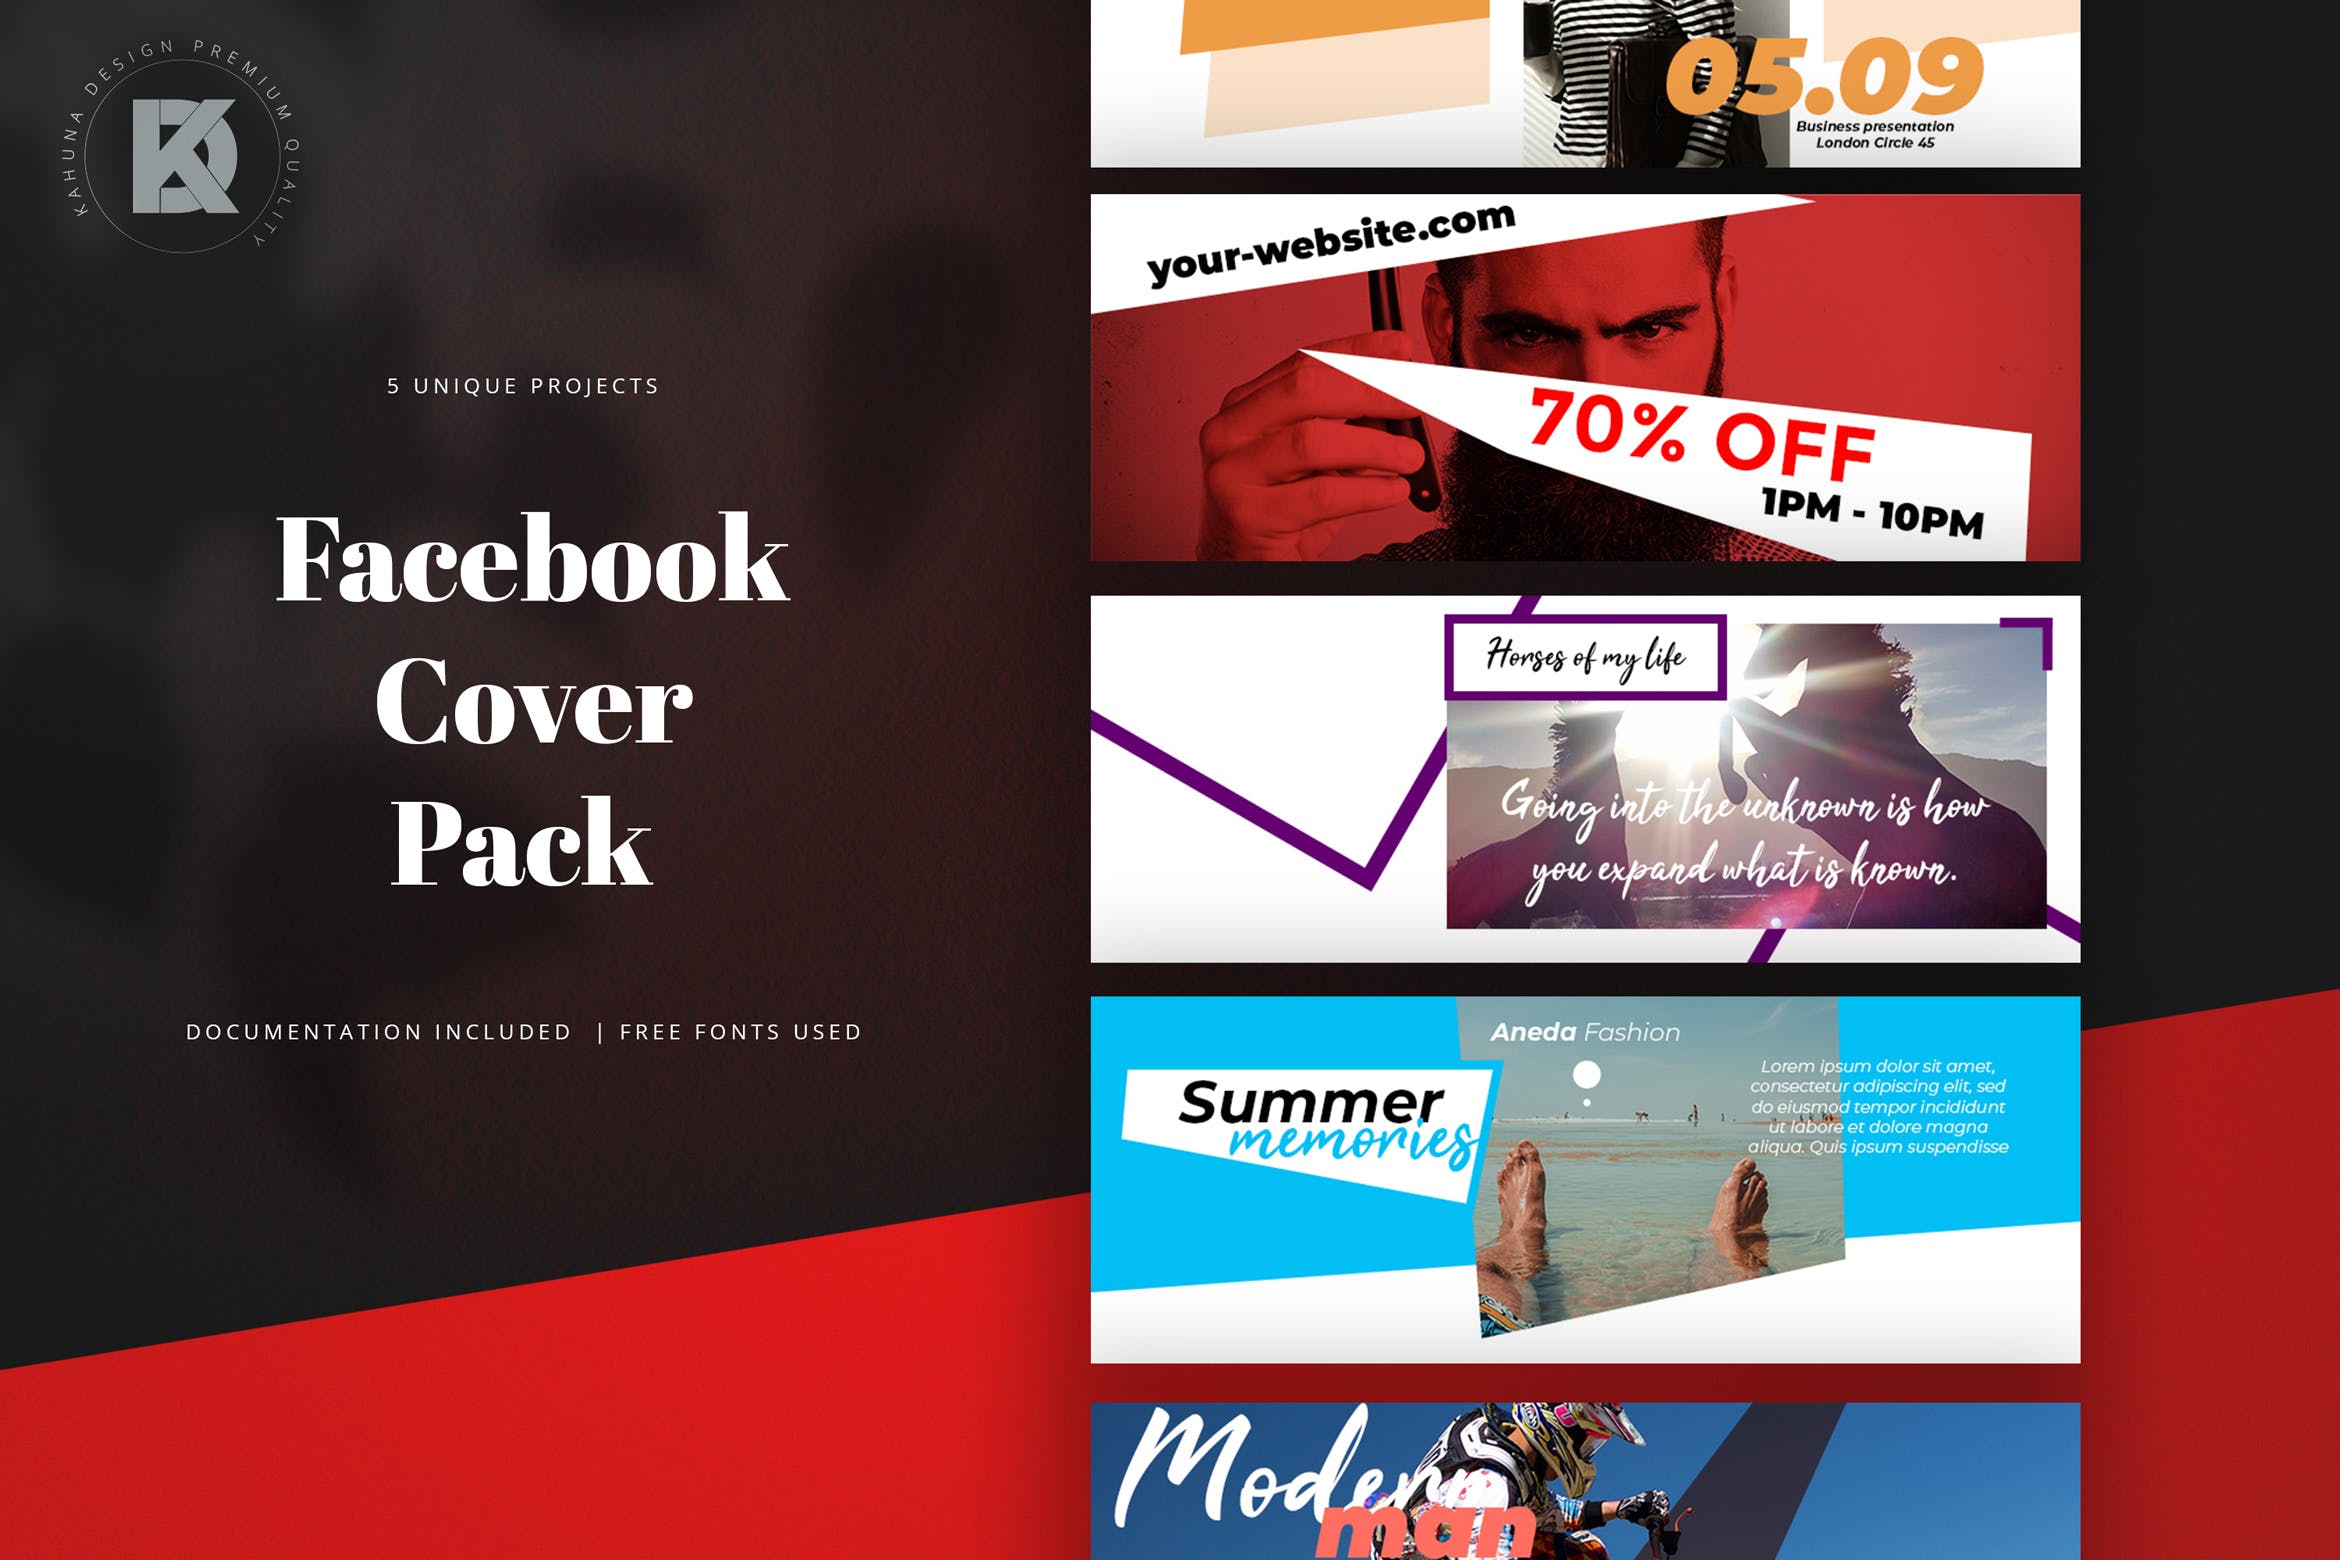 5款Facebook主页促销广告封面设计模板非凡图库精选 Facebook Cover Pack插图